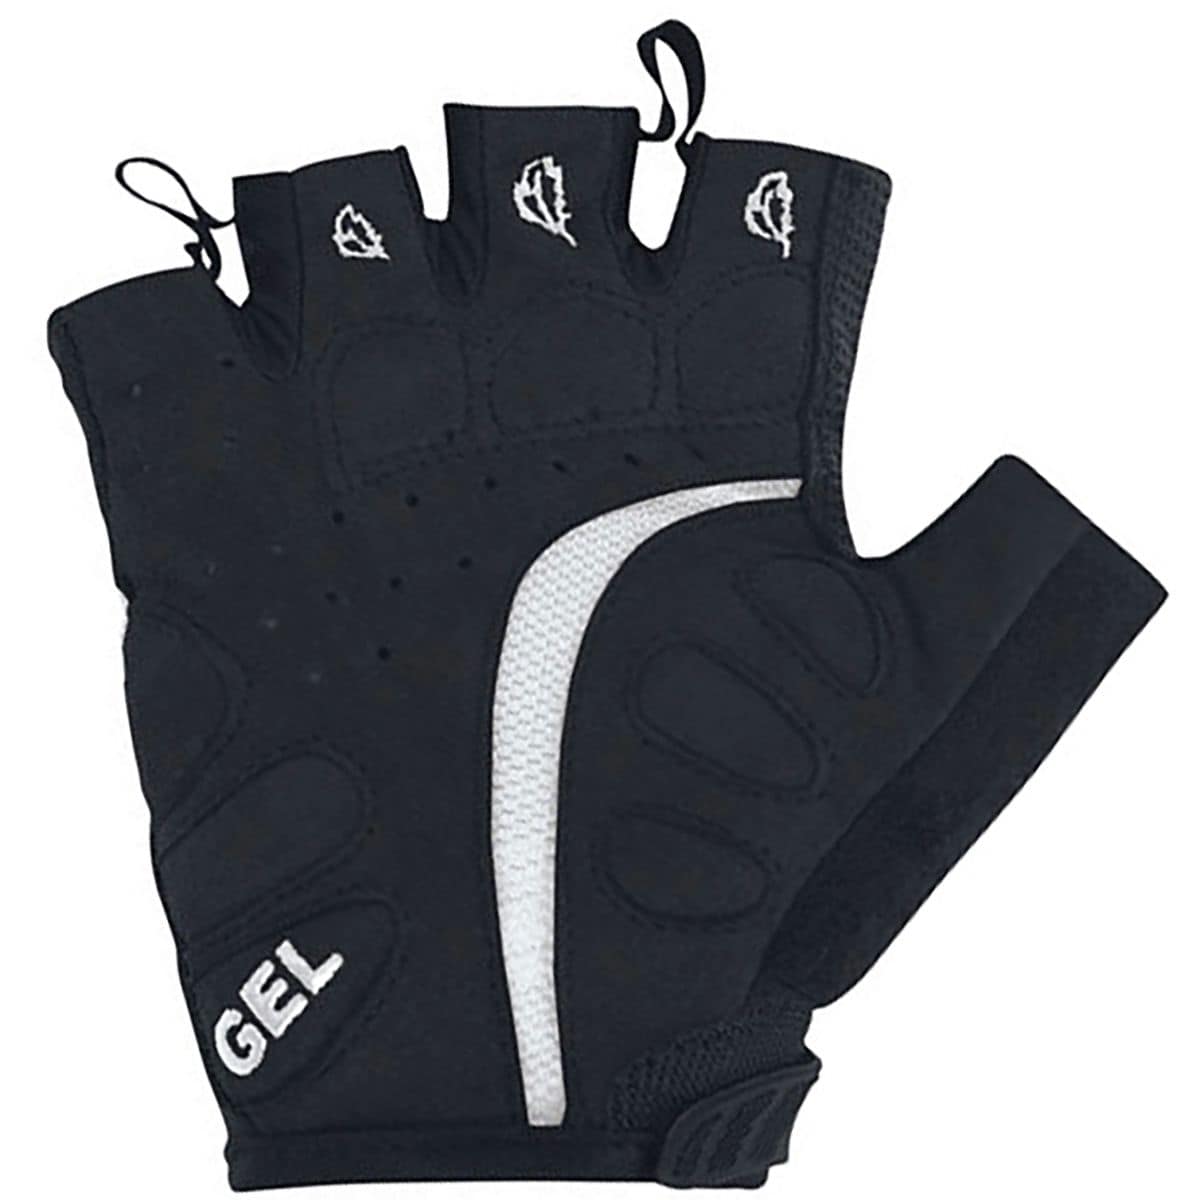 Gore Bike Wear Power Glove - Women's